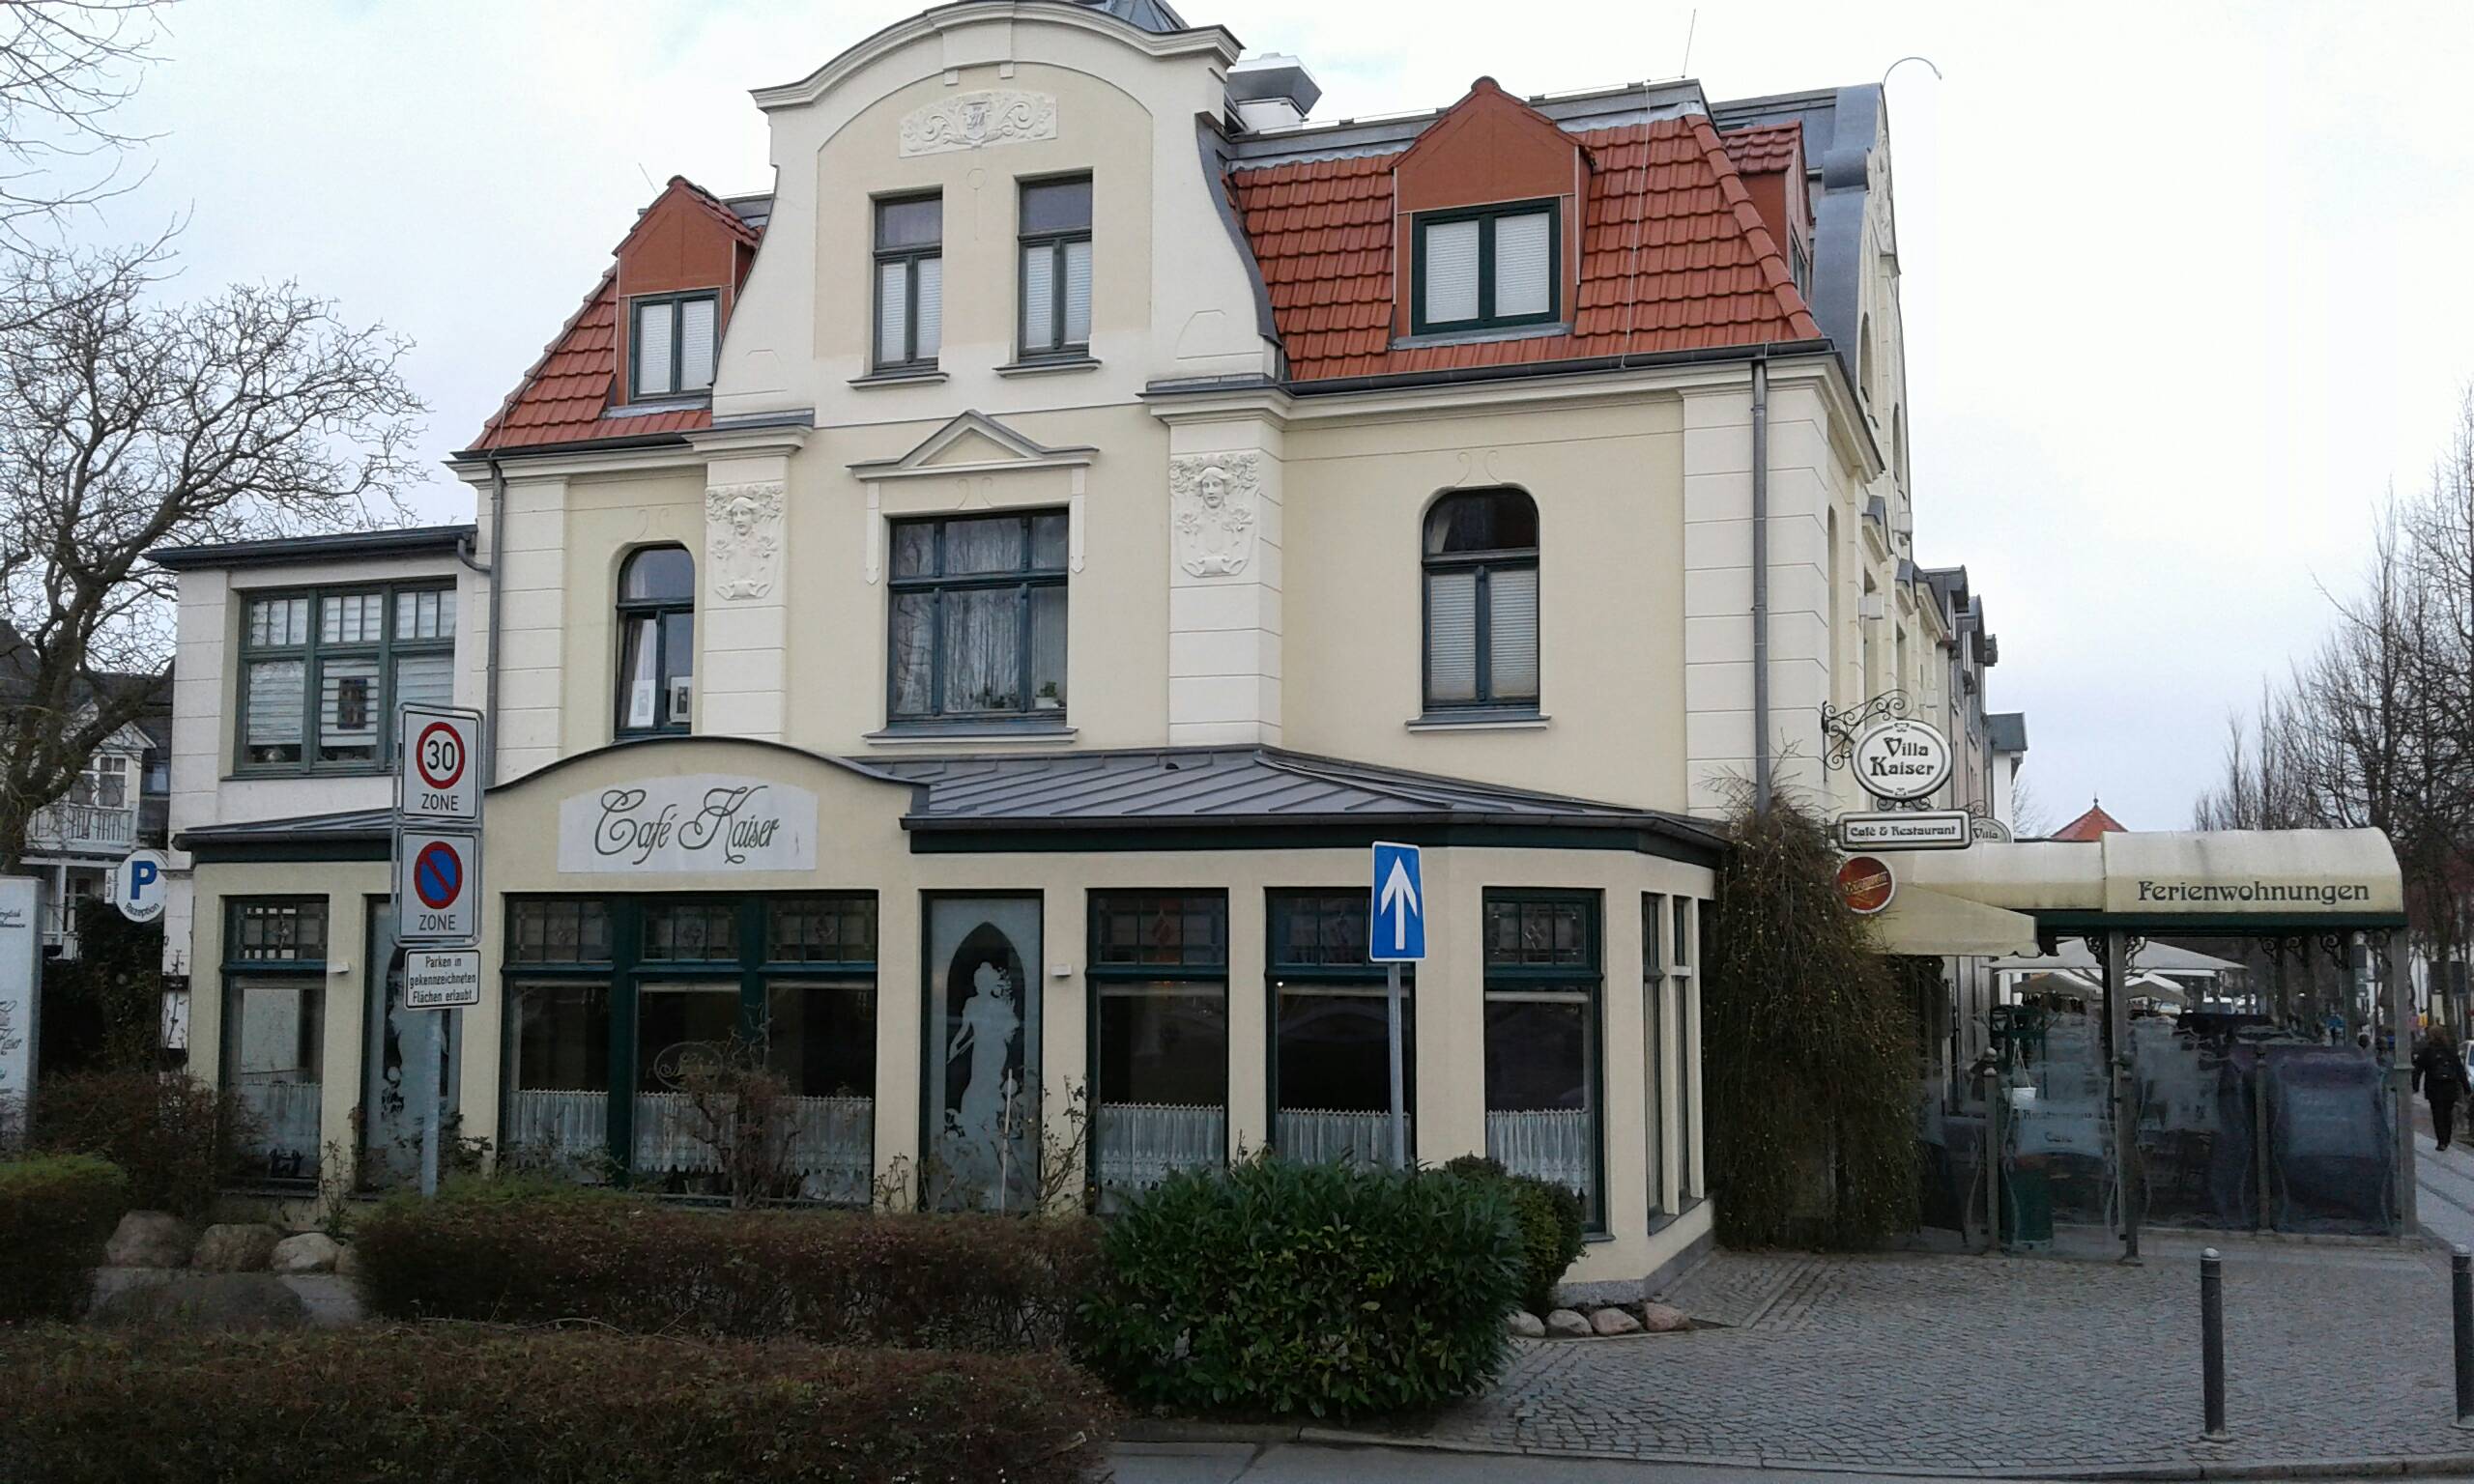 Bild 3 Villa Kaiser Hanne & Lutz Thrun Café Kaiser in Kühlungsborn